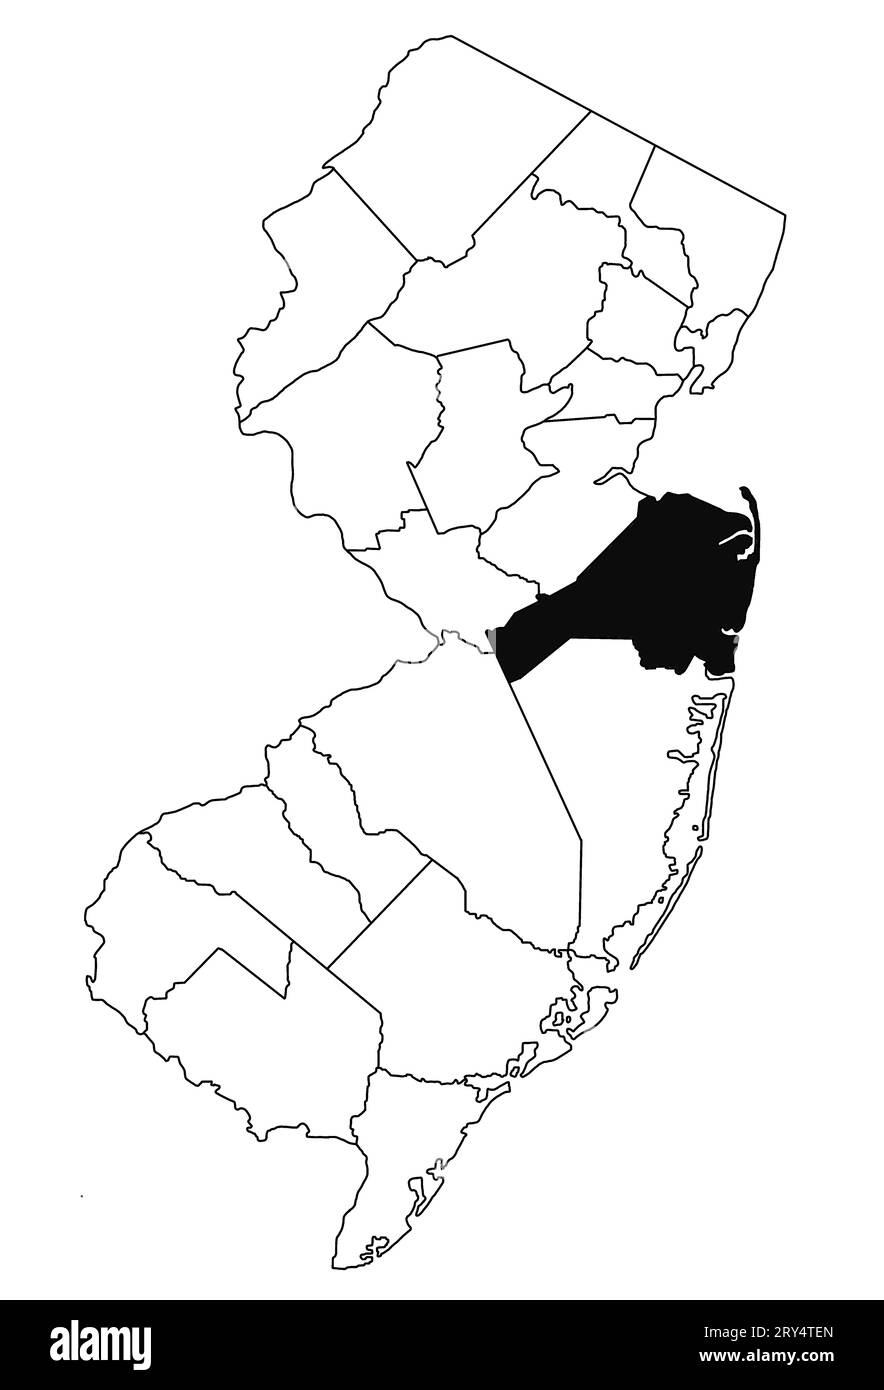 Mapa del condado de Monmouth en el estado de Nueva Jersey sobre fondo blanco. Mapa de Condado único resaltado por color negro en el mapa de jersey nuevo. Foto de stock